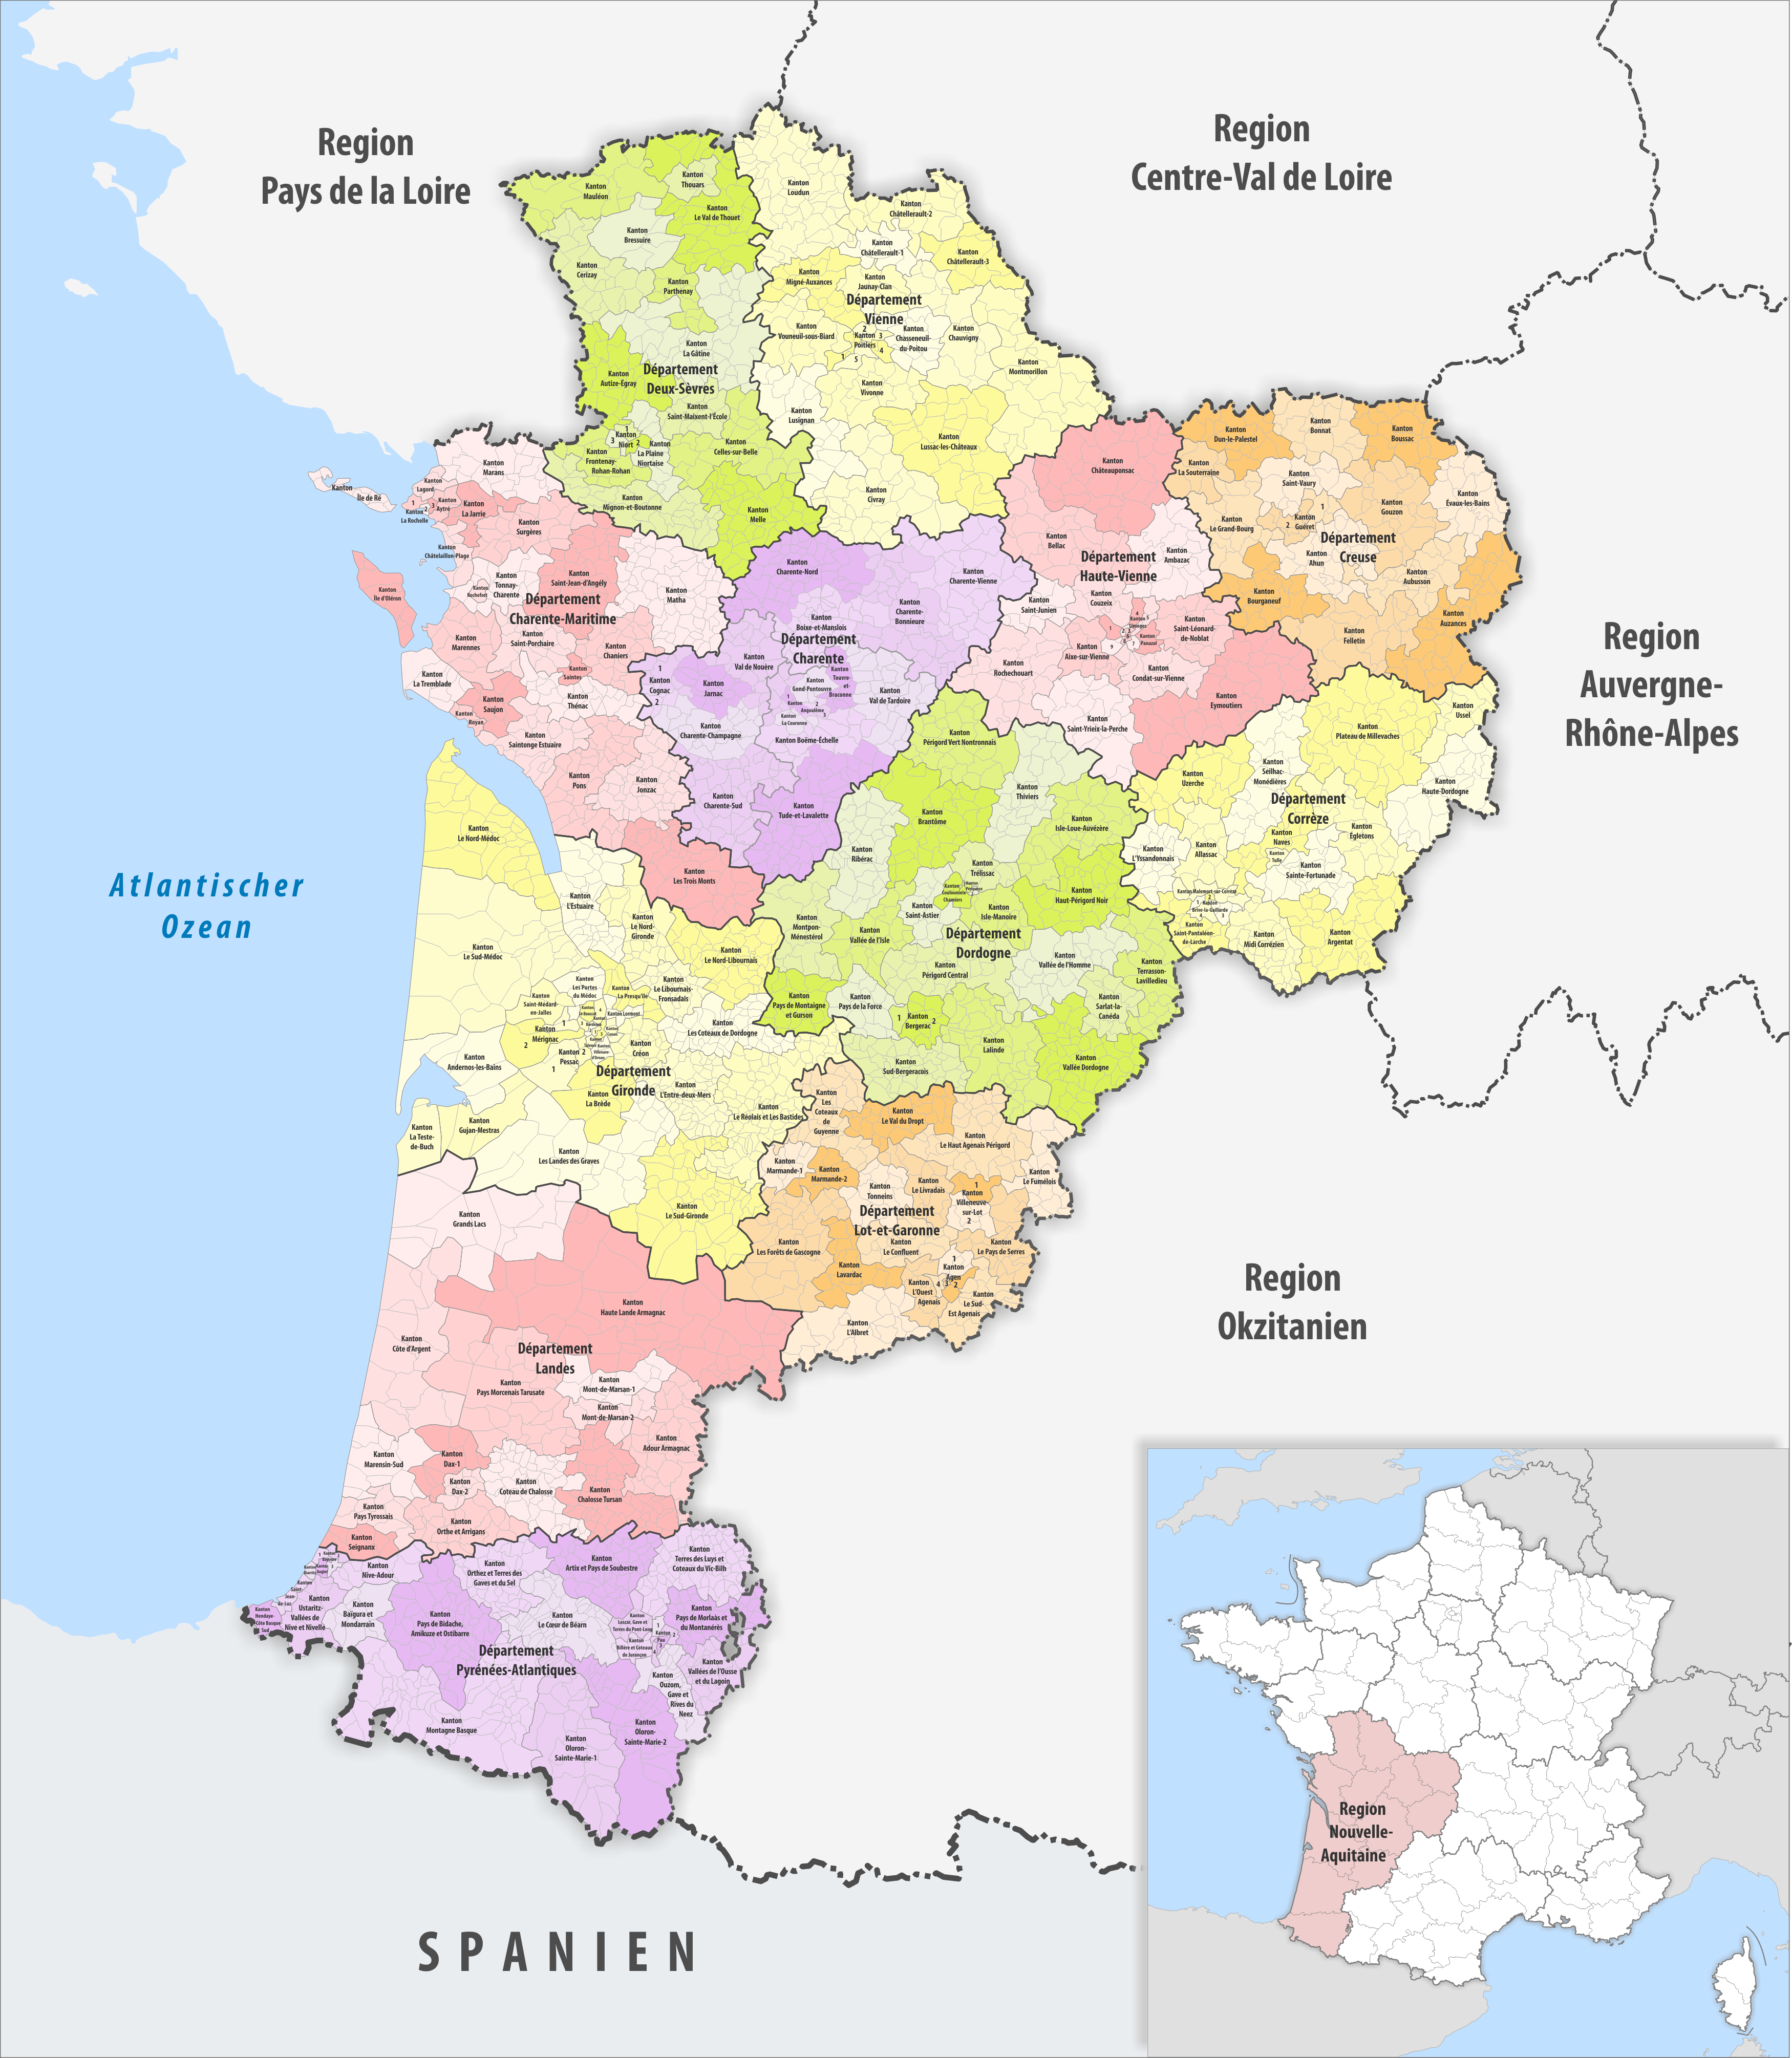 region aquitaine